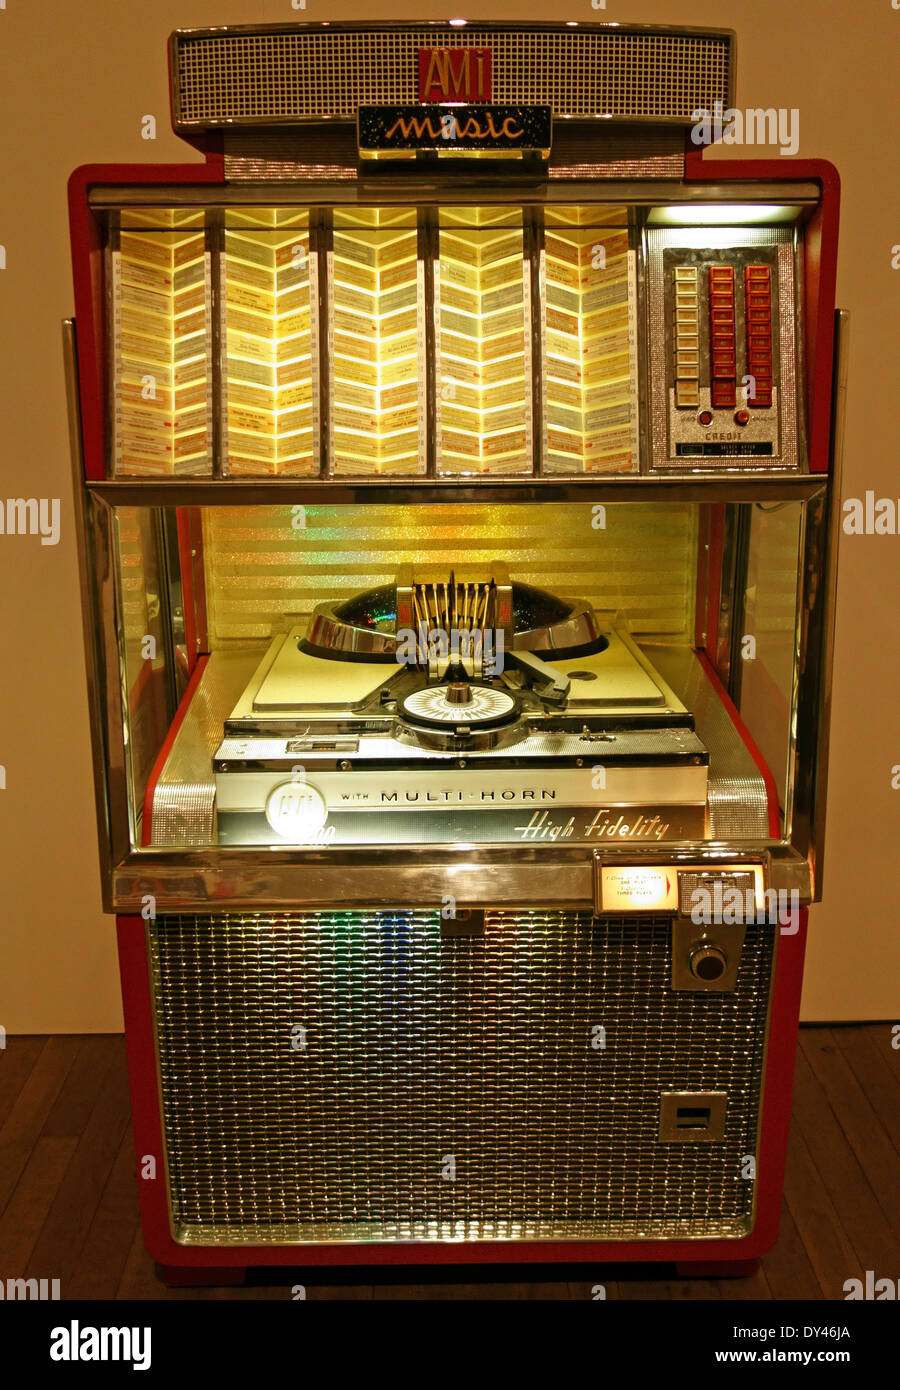 Jukebox 1960s immagini e fotografie stock ad alta risoluzione - Alamy